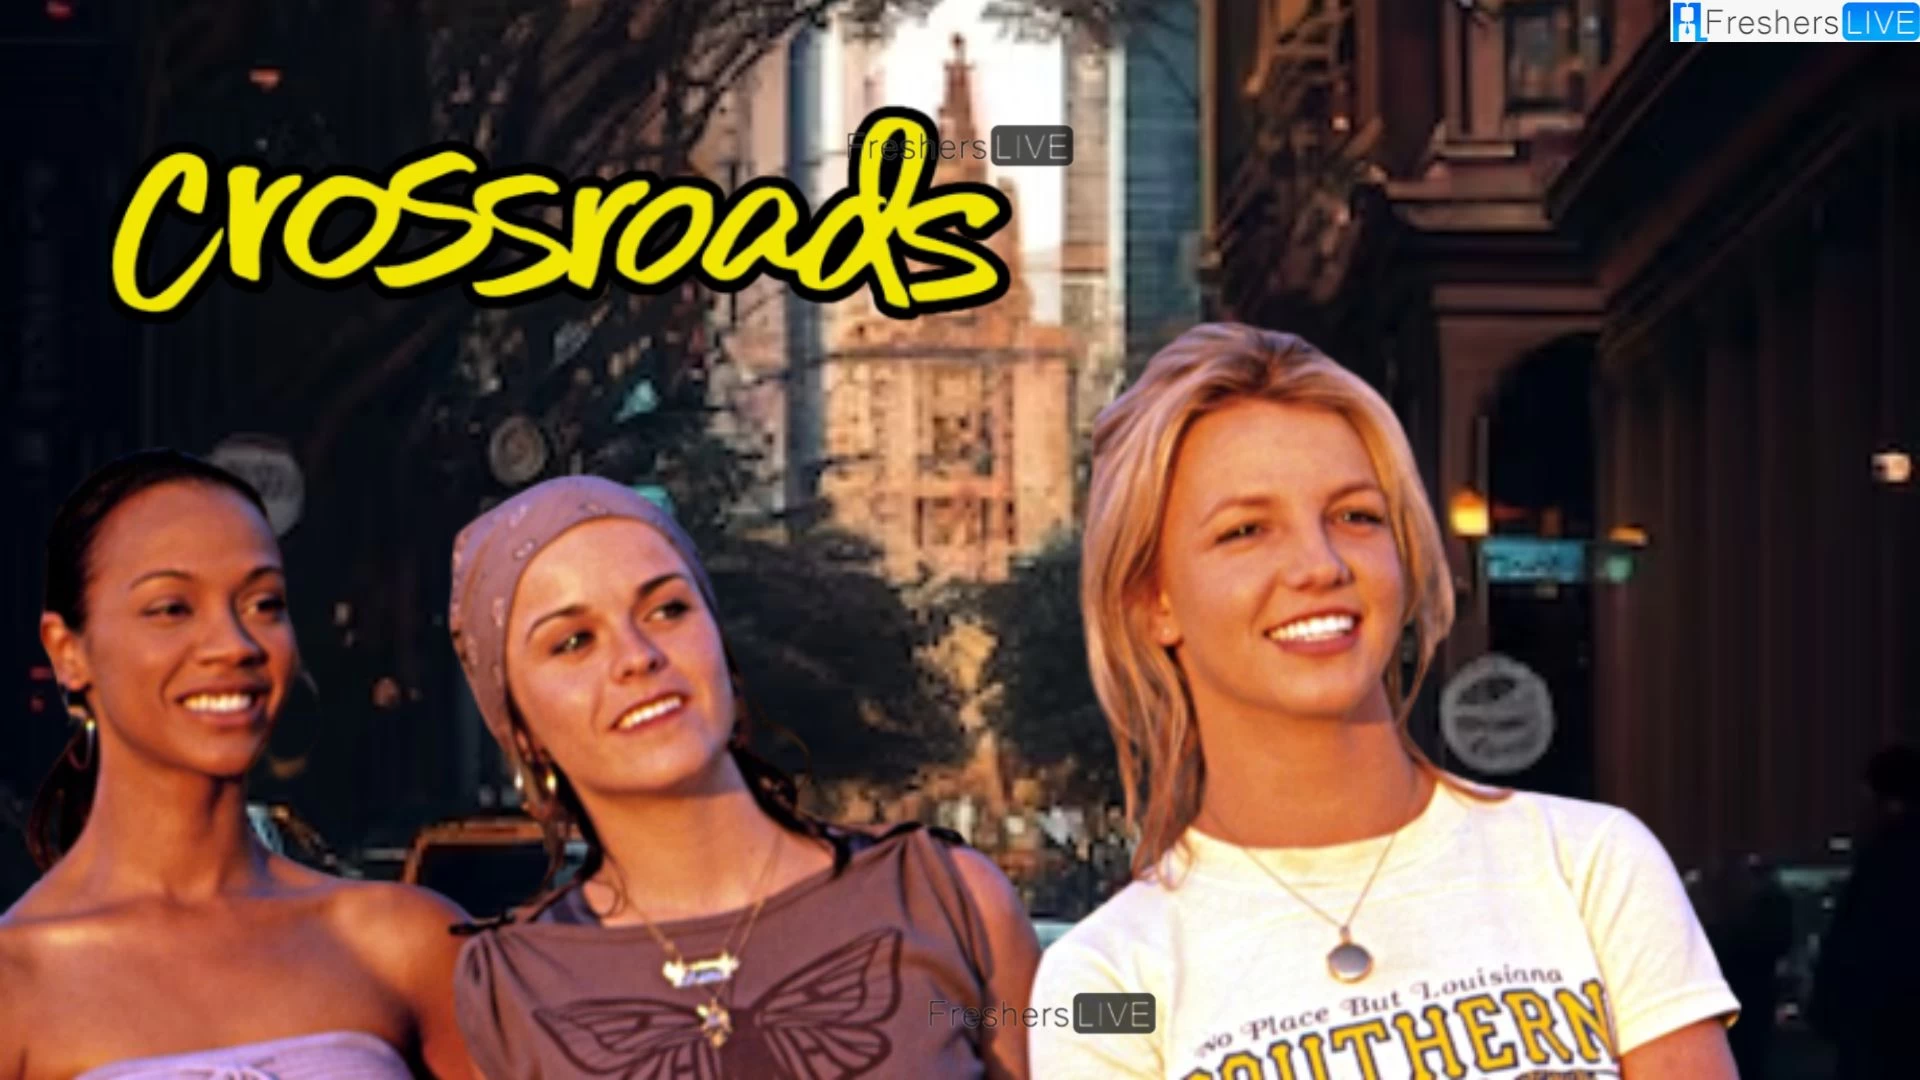 ¿La película Crossroads de Britney Spears de 2002 regresará a los cines?  Fecha de relanzamiento de Crossroads